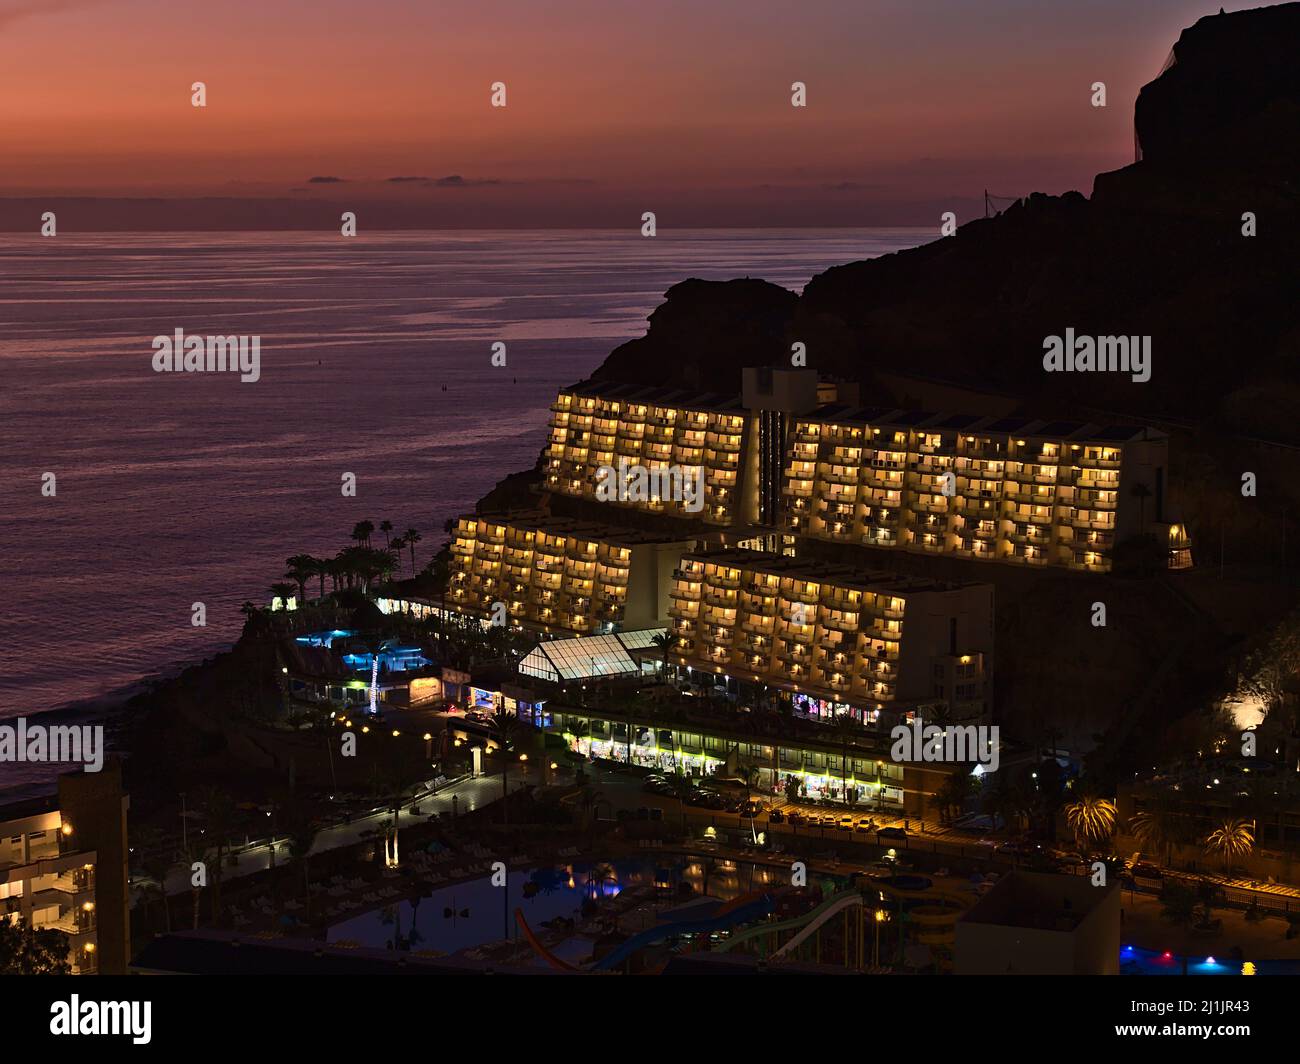 Vista aerea del resort turistico Taurito, Gran Canaria meridionale, Isole Canarie, Spagna in serata dopo il tramonto con il cielo colorato e l'hotel illuminato. Foto Stock